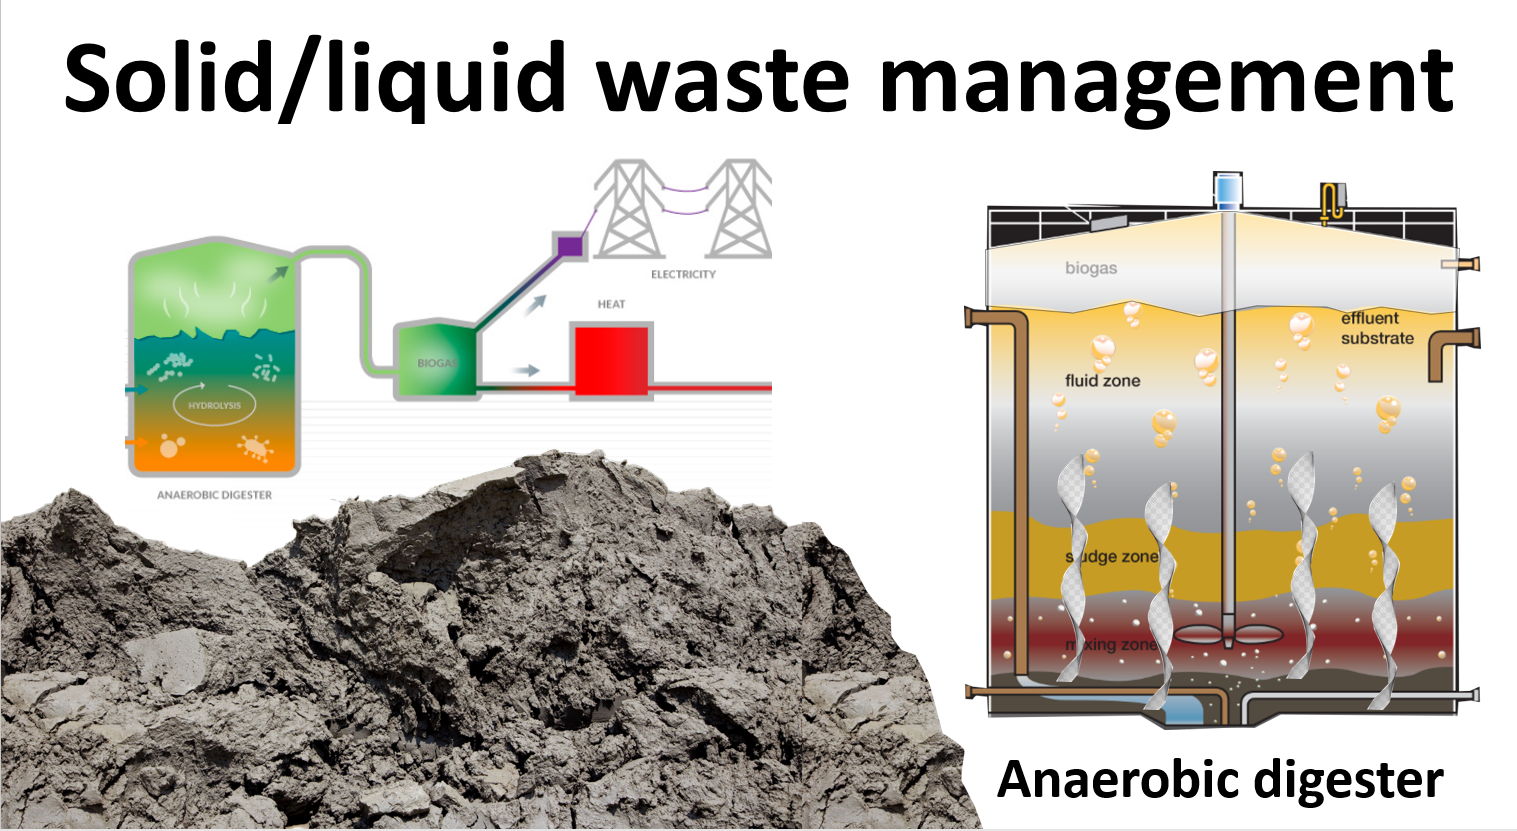 Solid Liquid Waste Management - Waste Sludge Handling (Video)